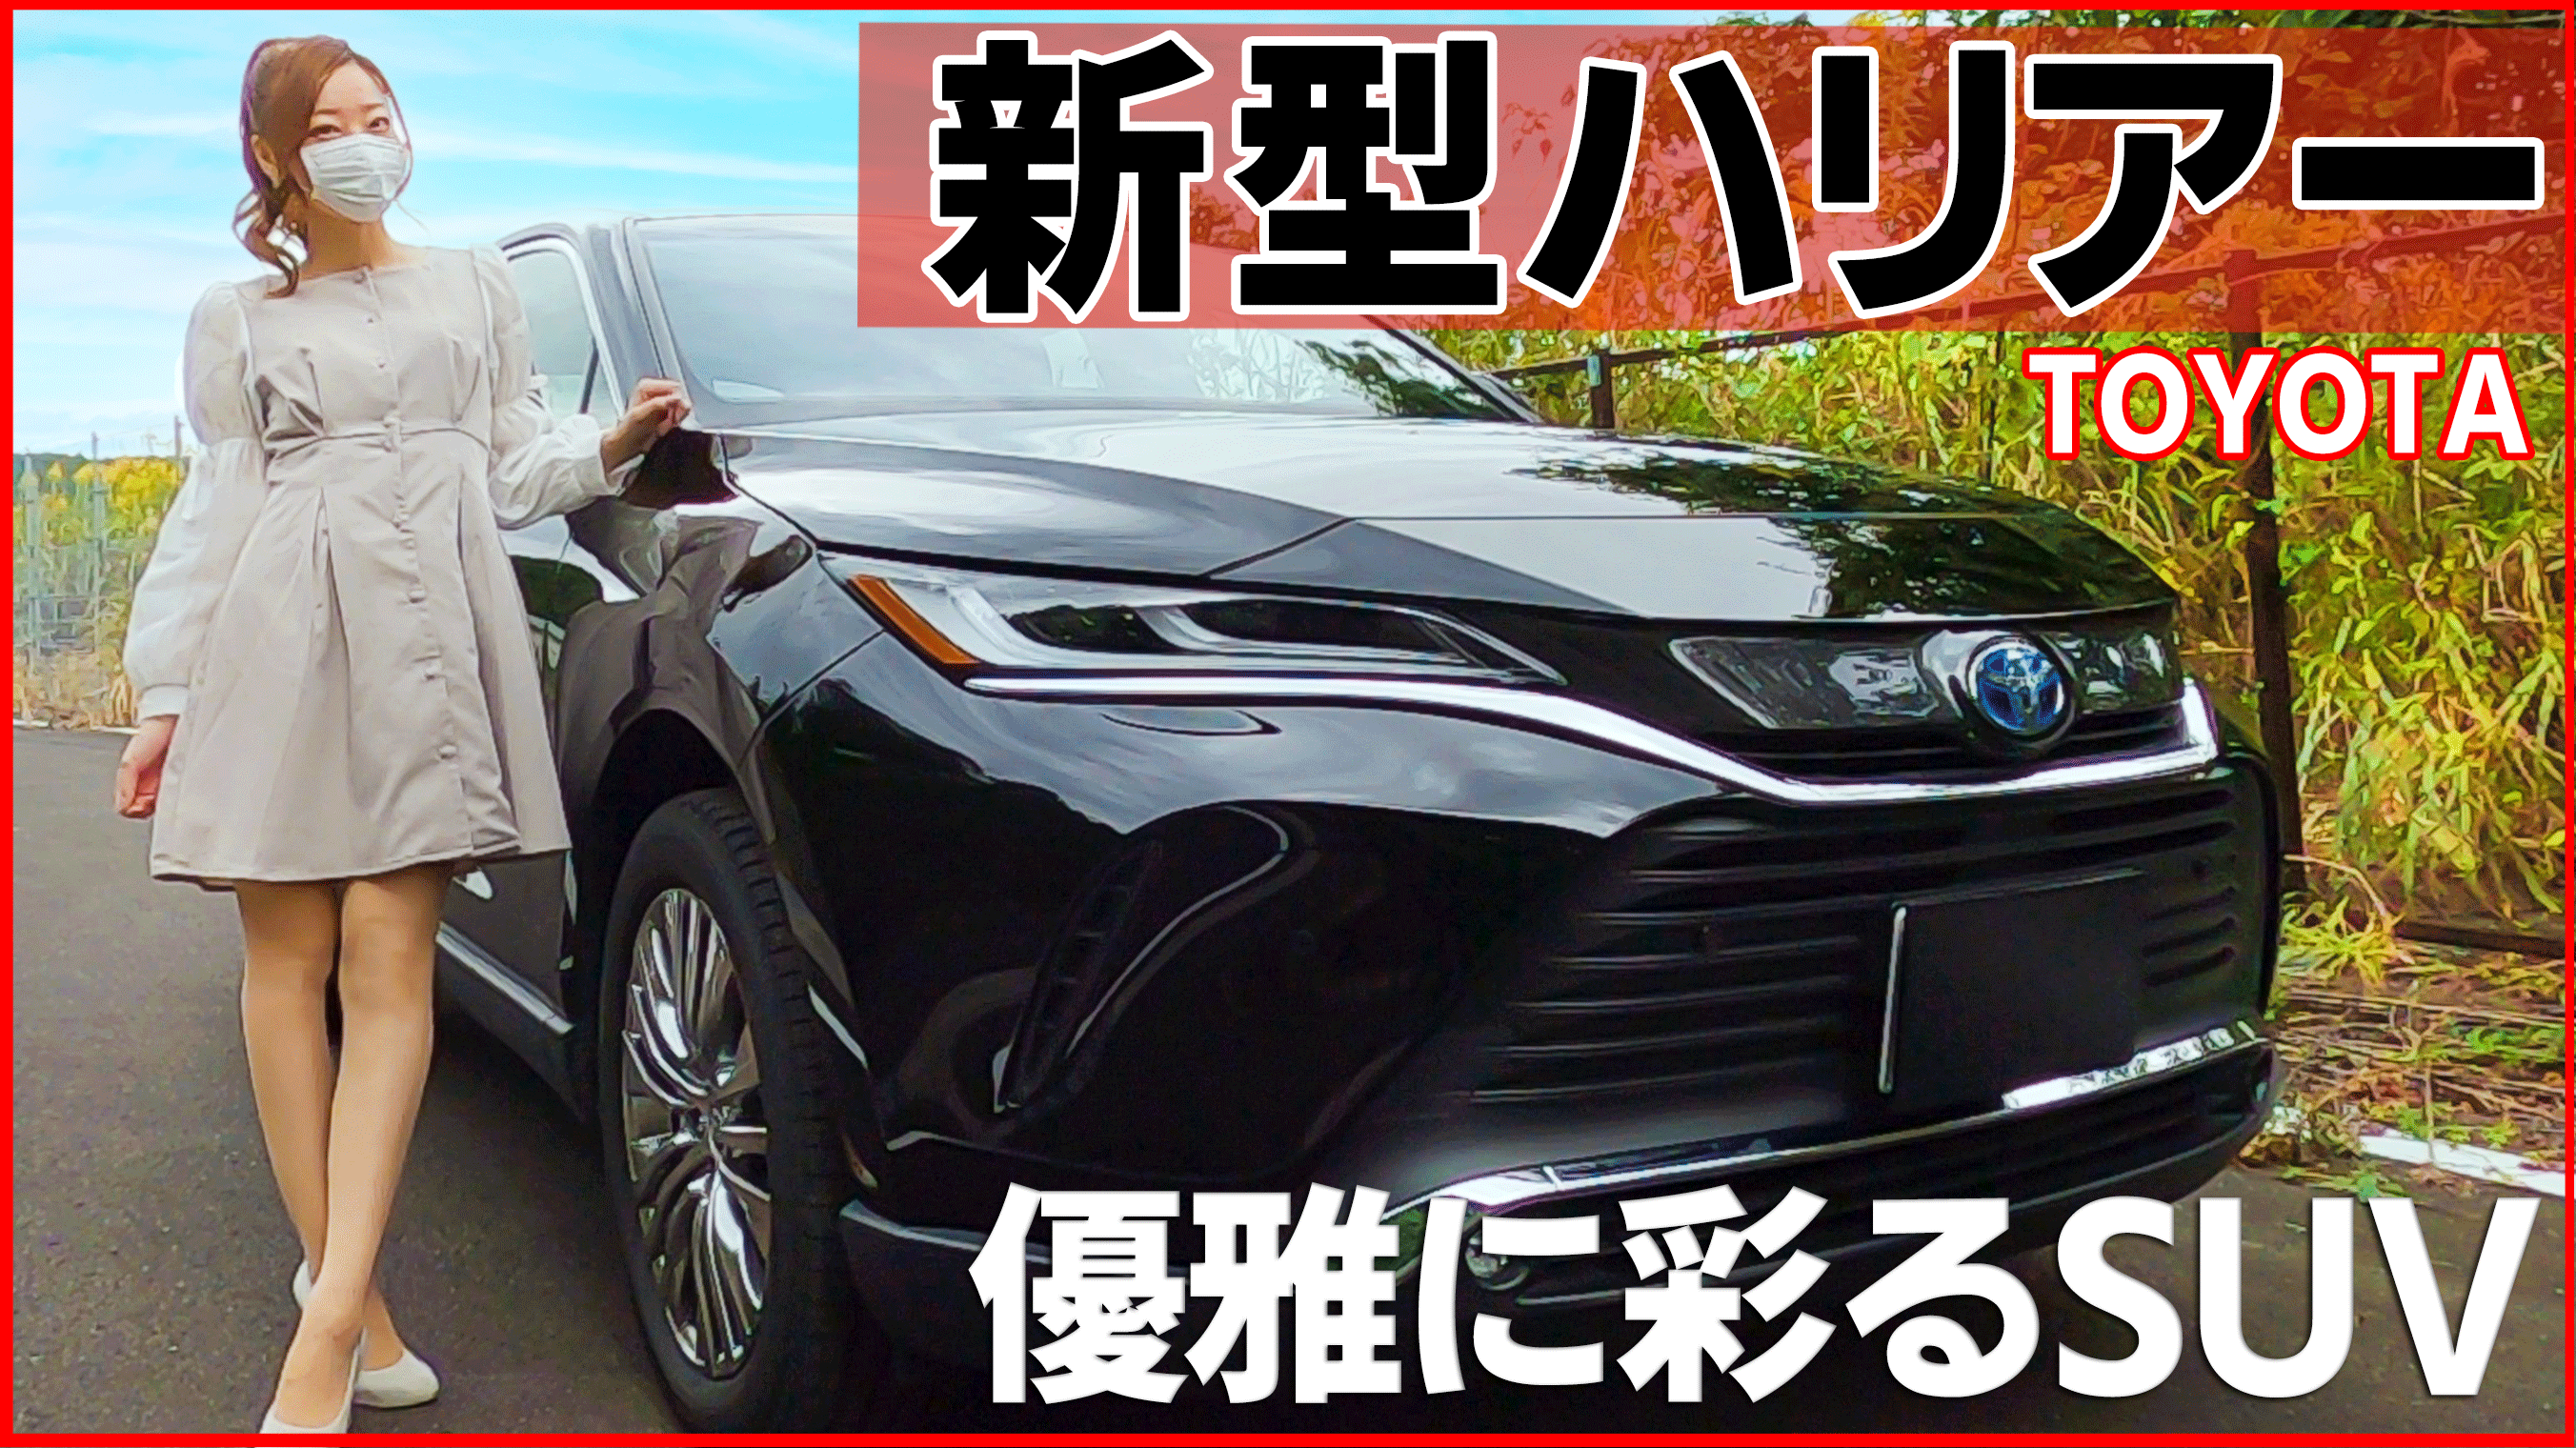 Mii Youtube更新しました 本日は新型ハリアーのご紹介です 夜の美しさも感じてもらえるように 夜の映像もたっぷり入れてみました 是非 ご覧ください 新型ハリアー 内装外装を詳しく紹介 優雅に彩る人気suv この高級感は贅沢過ぎる Toyota